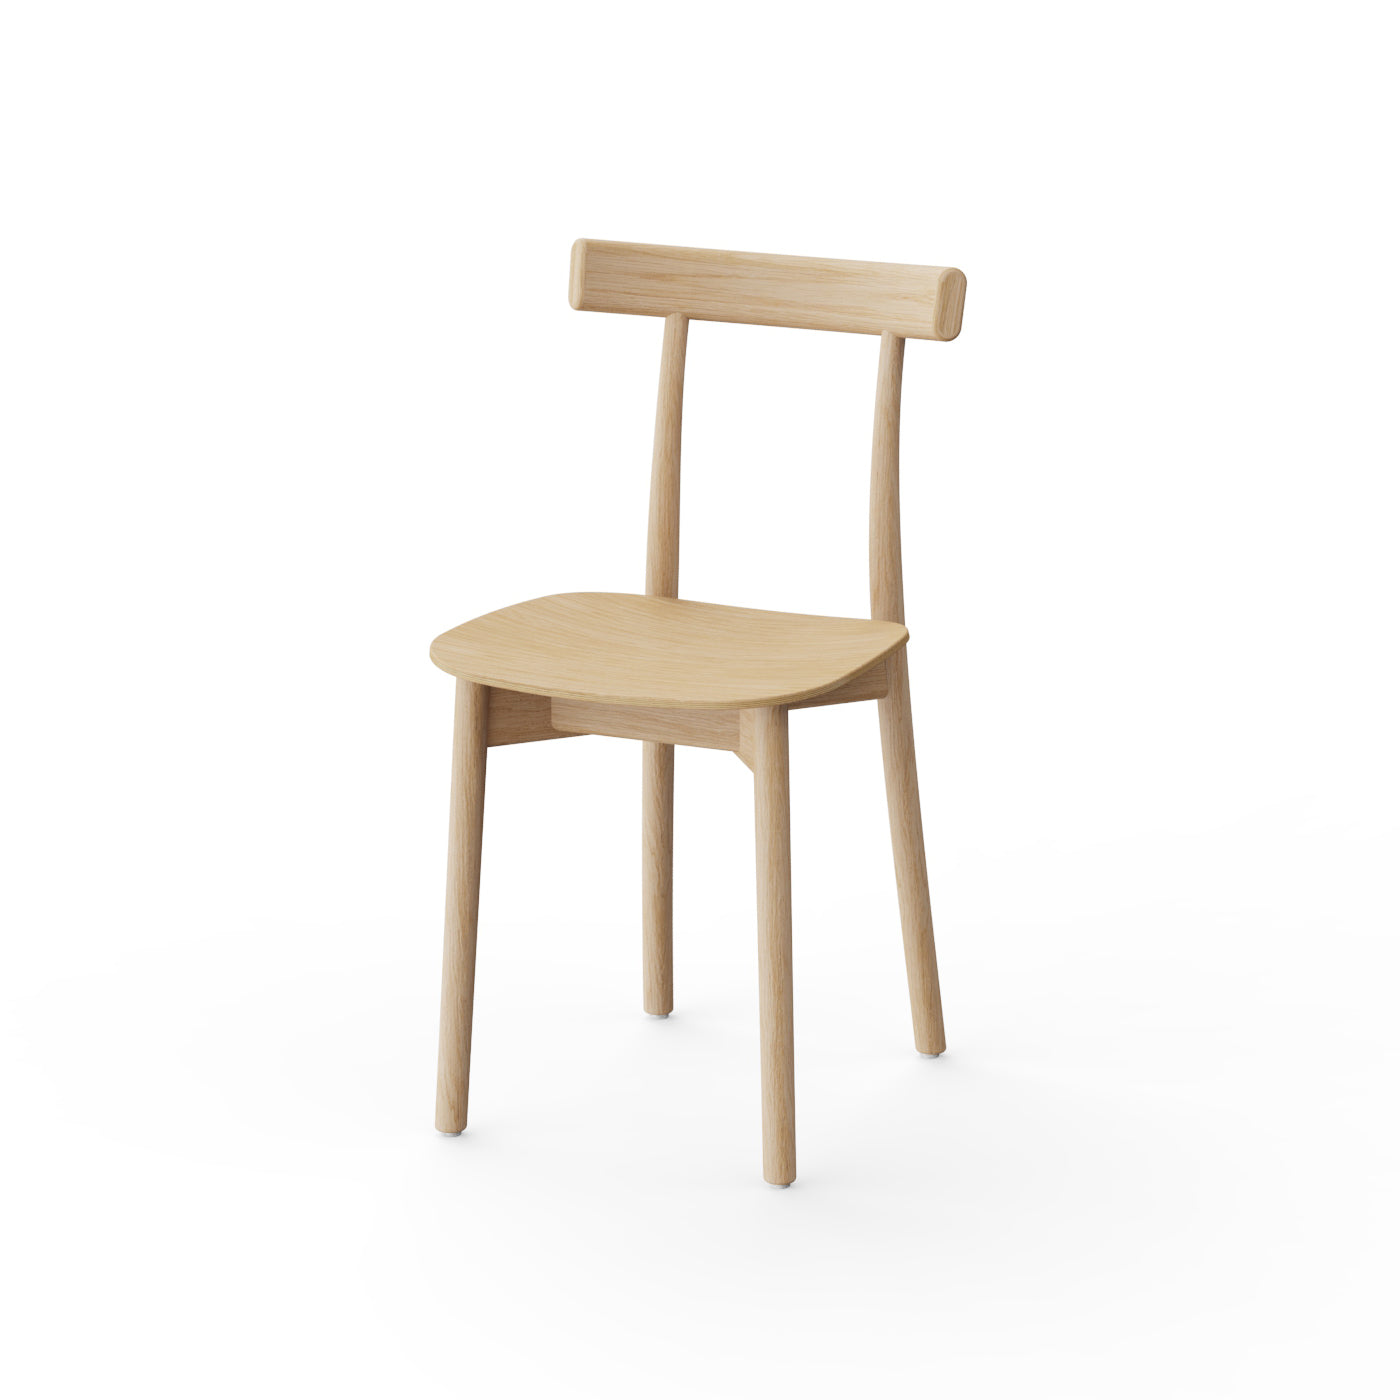 NINE Skinny Wooden Chair